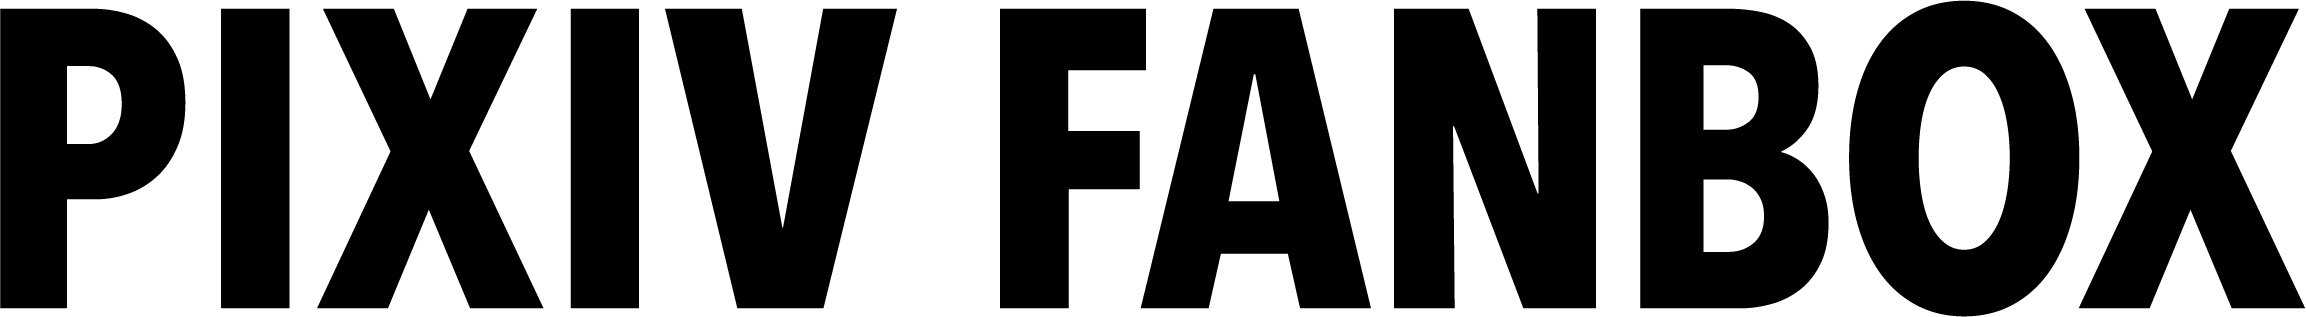 pixivFANBOXロゴ